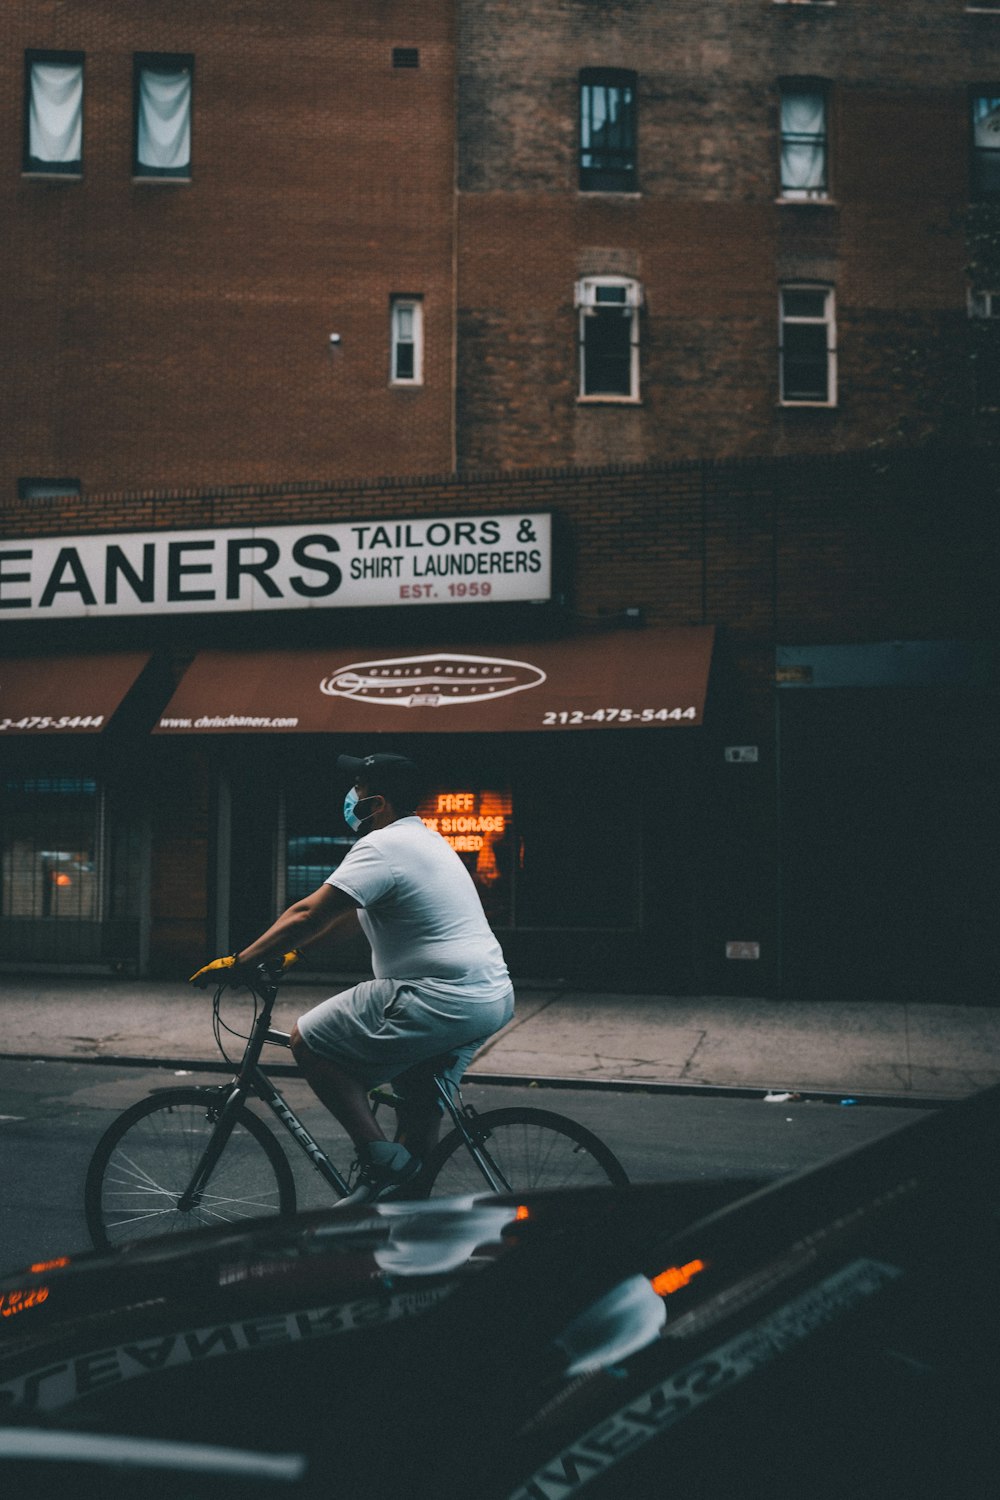 man in white shirt riding bicycle on street during daytime